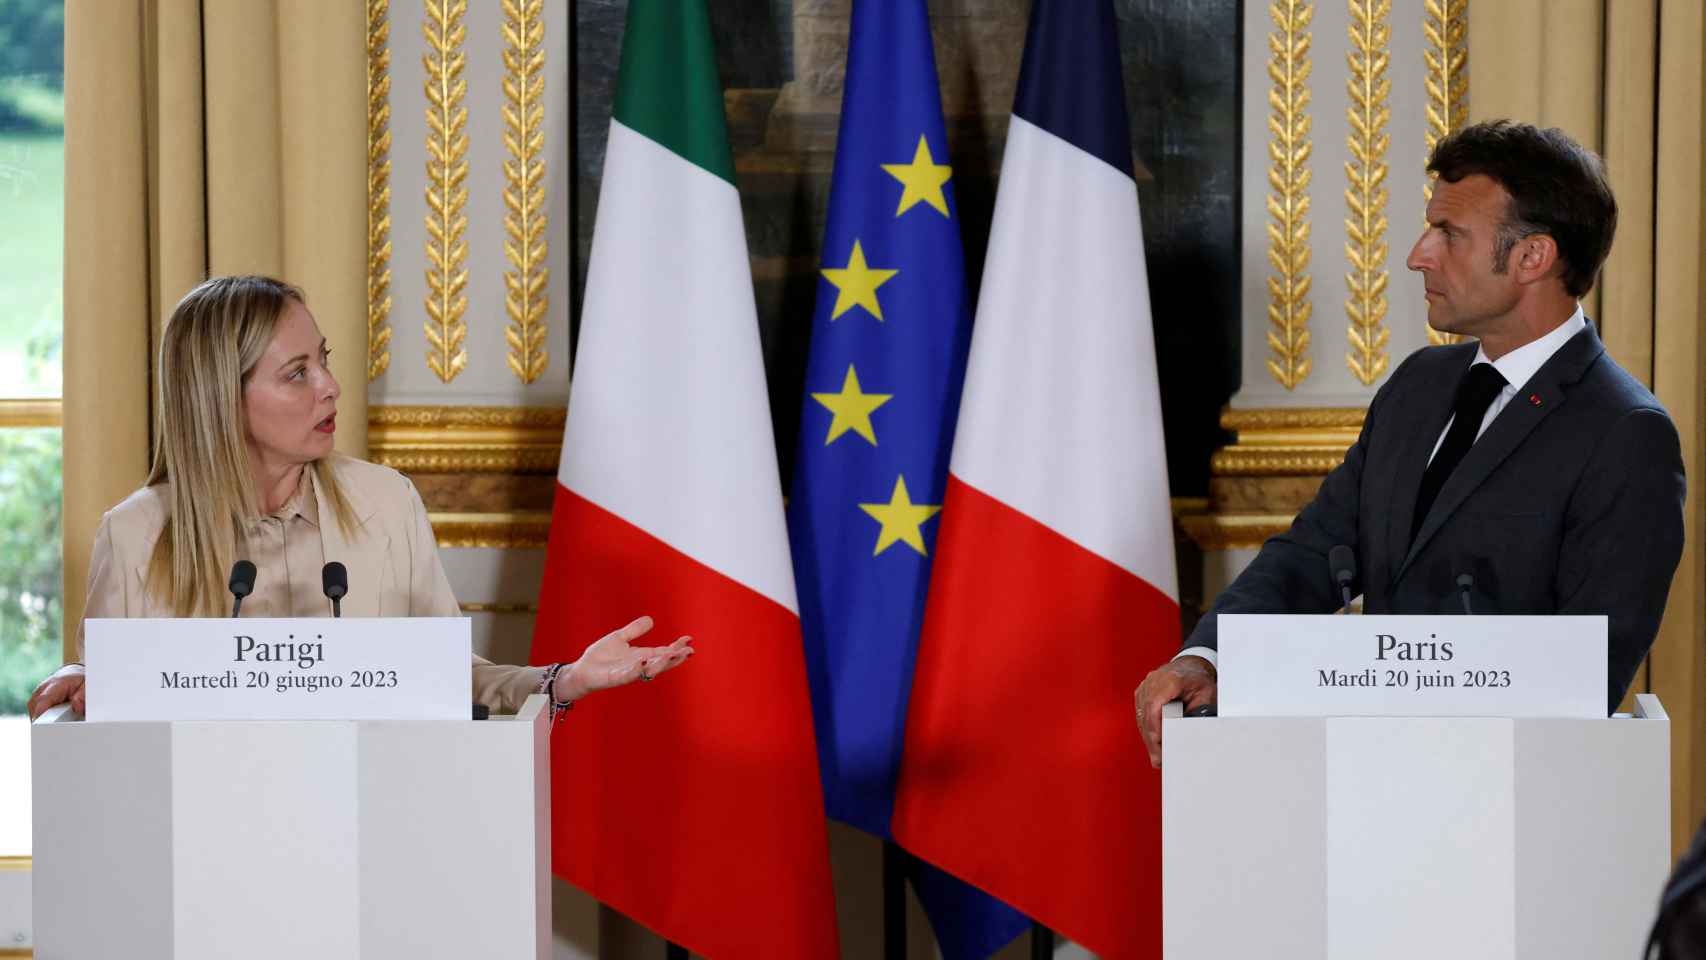 Giorgia Meloni y Emmanuel Macron, durante su rueda de prensa conjunta este martes en París